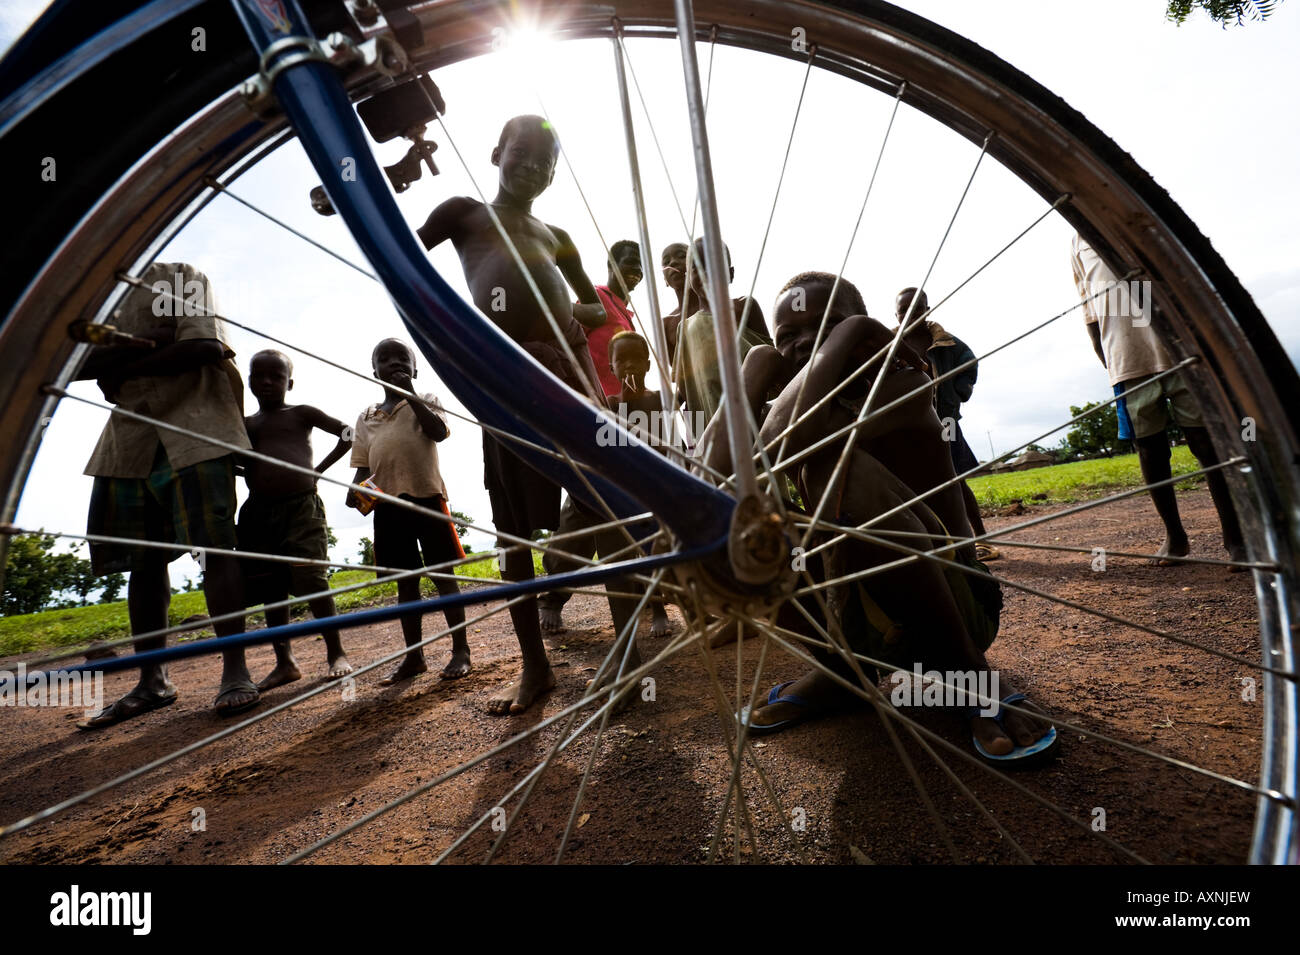 Les enfants sont vus à travers la roue de bicyclette, Tarikpa, Ghana Banque D'Images